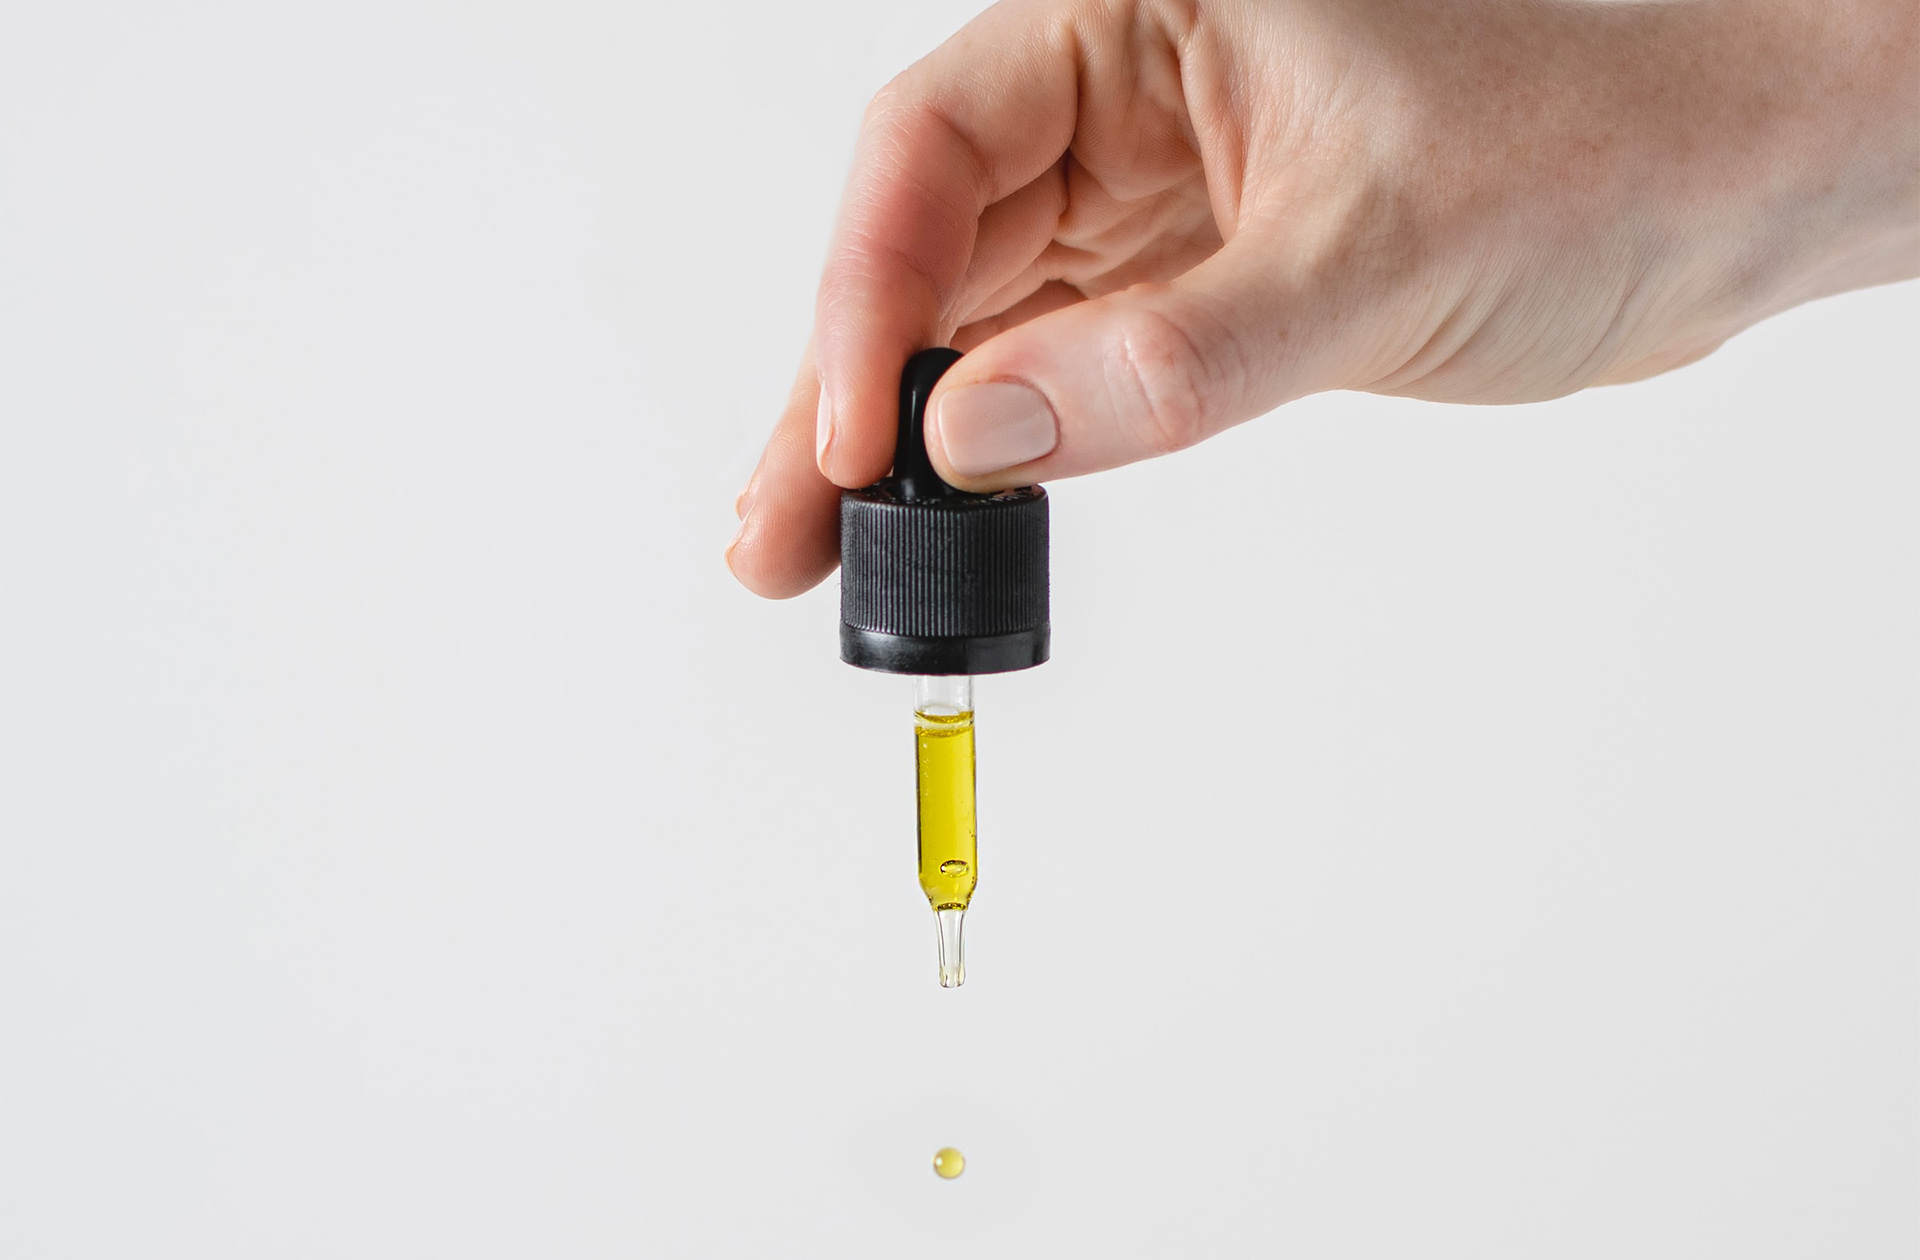 Appliquer de l’huile de soin en début de routine skincare : bonne ou mauvaise idée ?